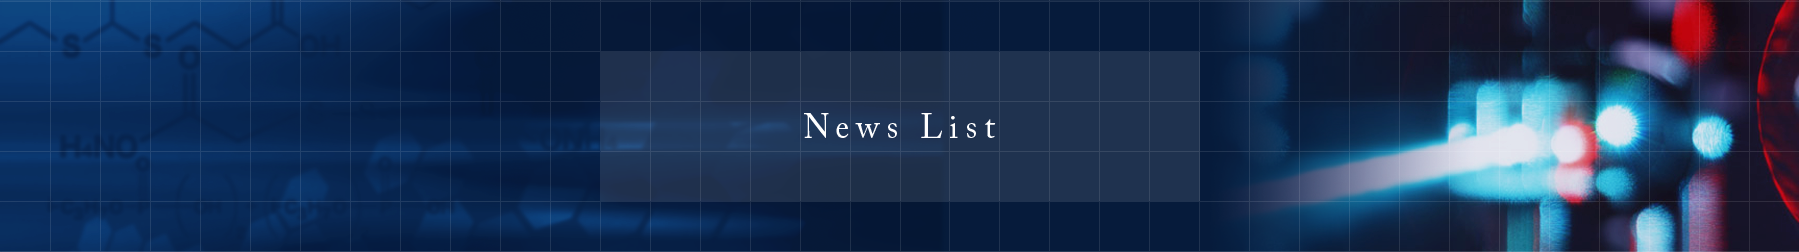 News List